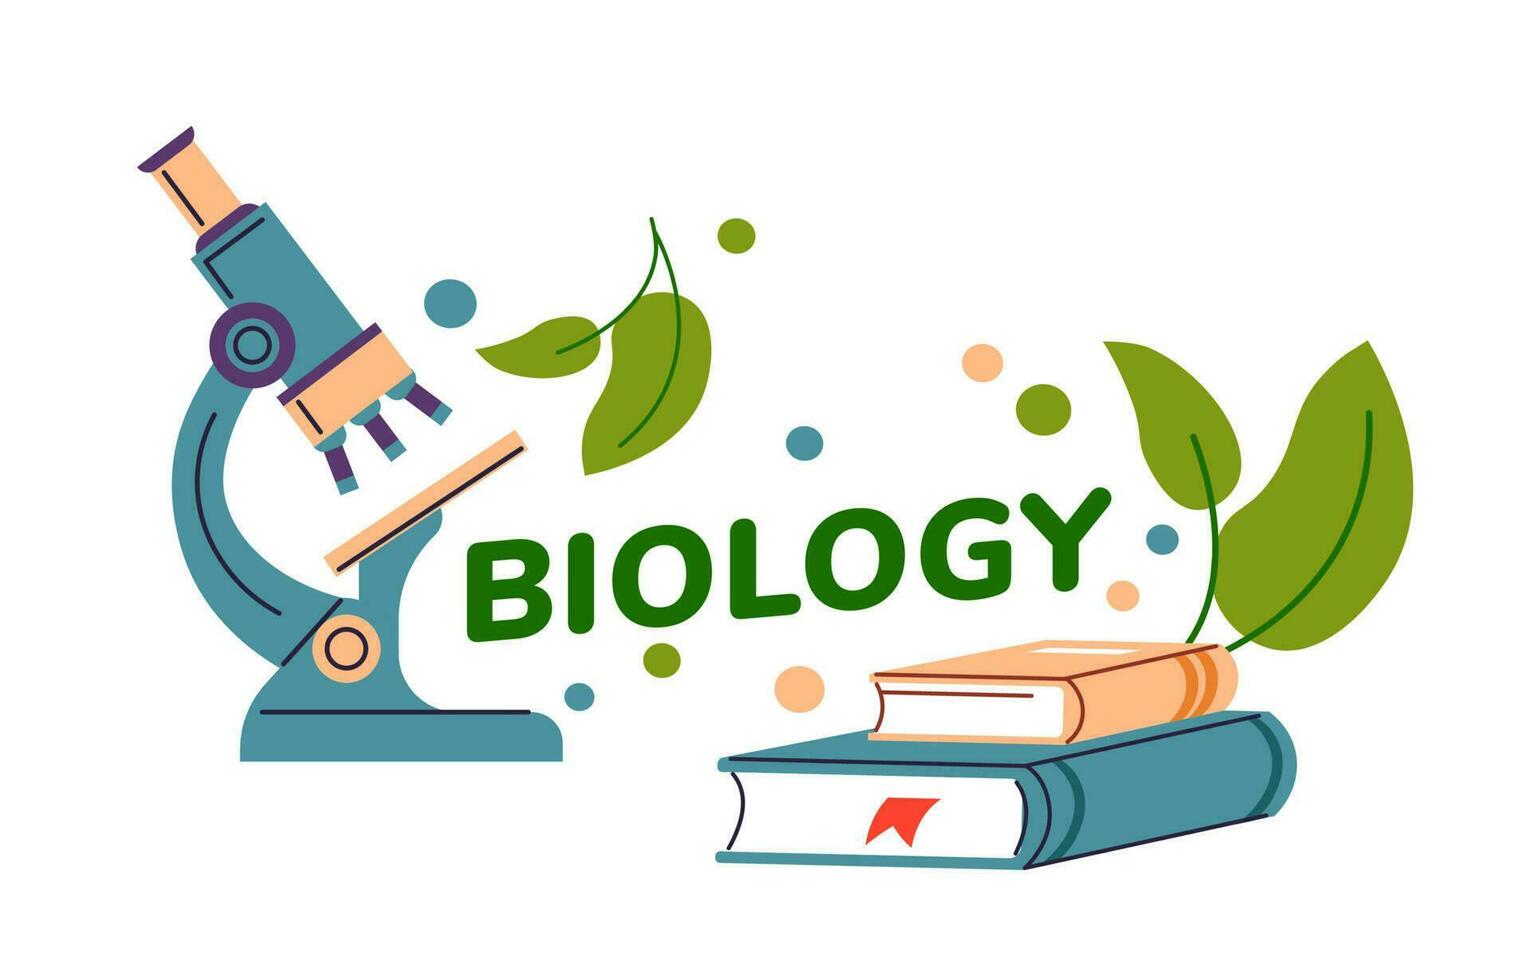 biologia Lezioni, microscopi e libri vettore